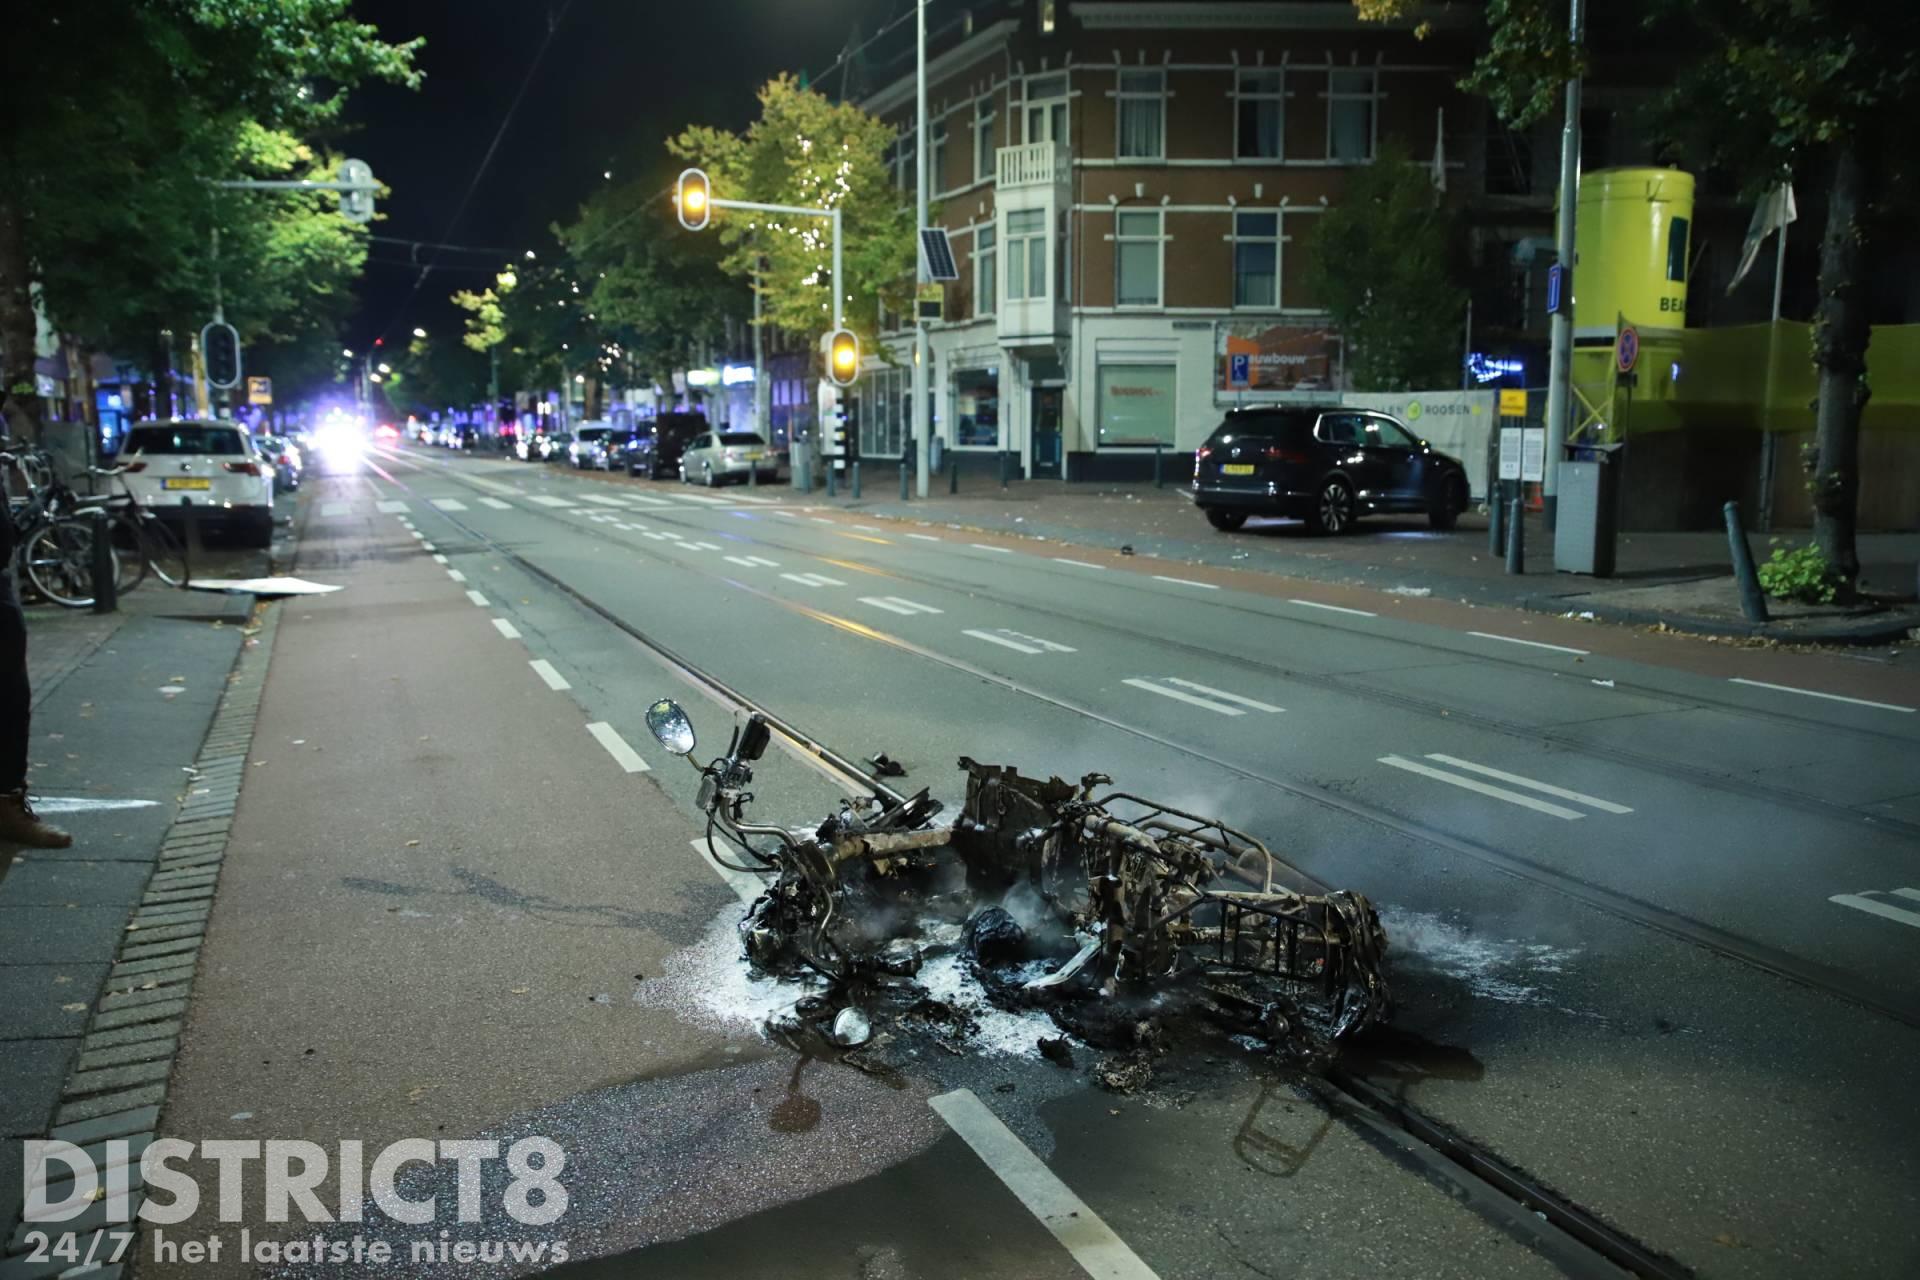 Opnieuw scooter in brand gestoken in Haagse wijk Paul Krugerlaan Den Haag